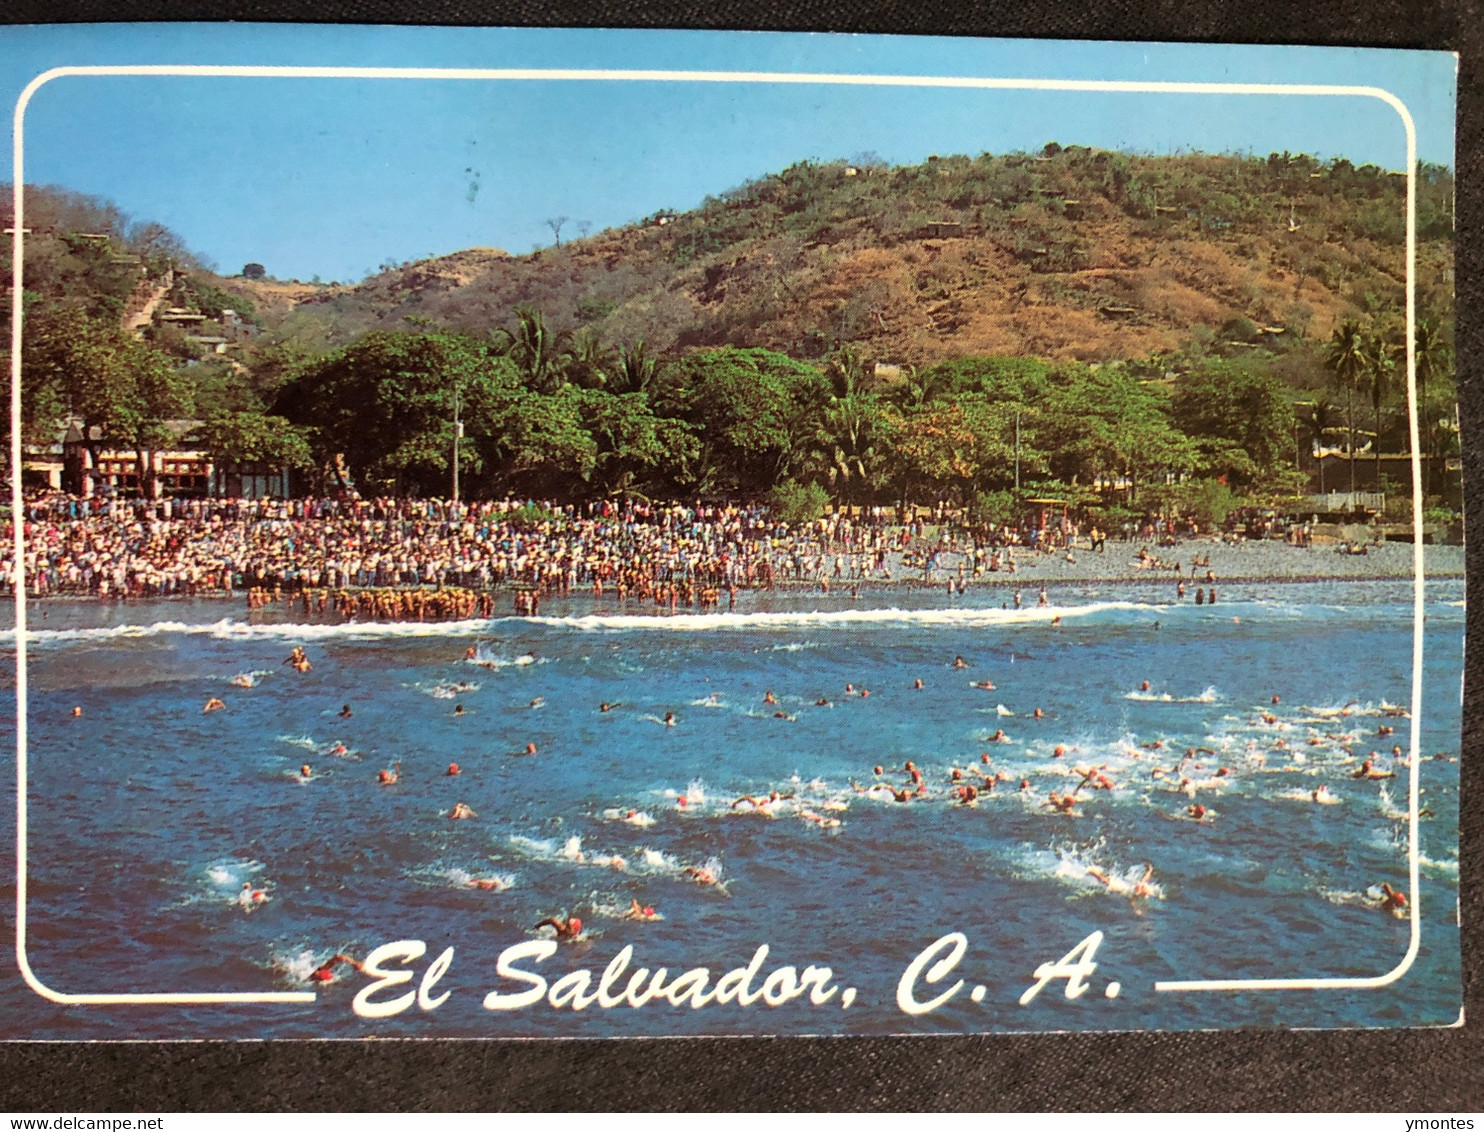 Postcard Aquatic Sports 2012 - El Salvador